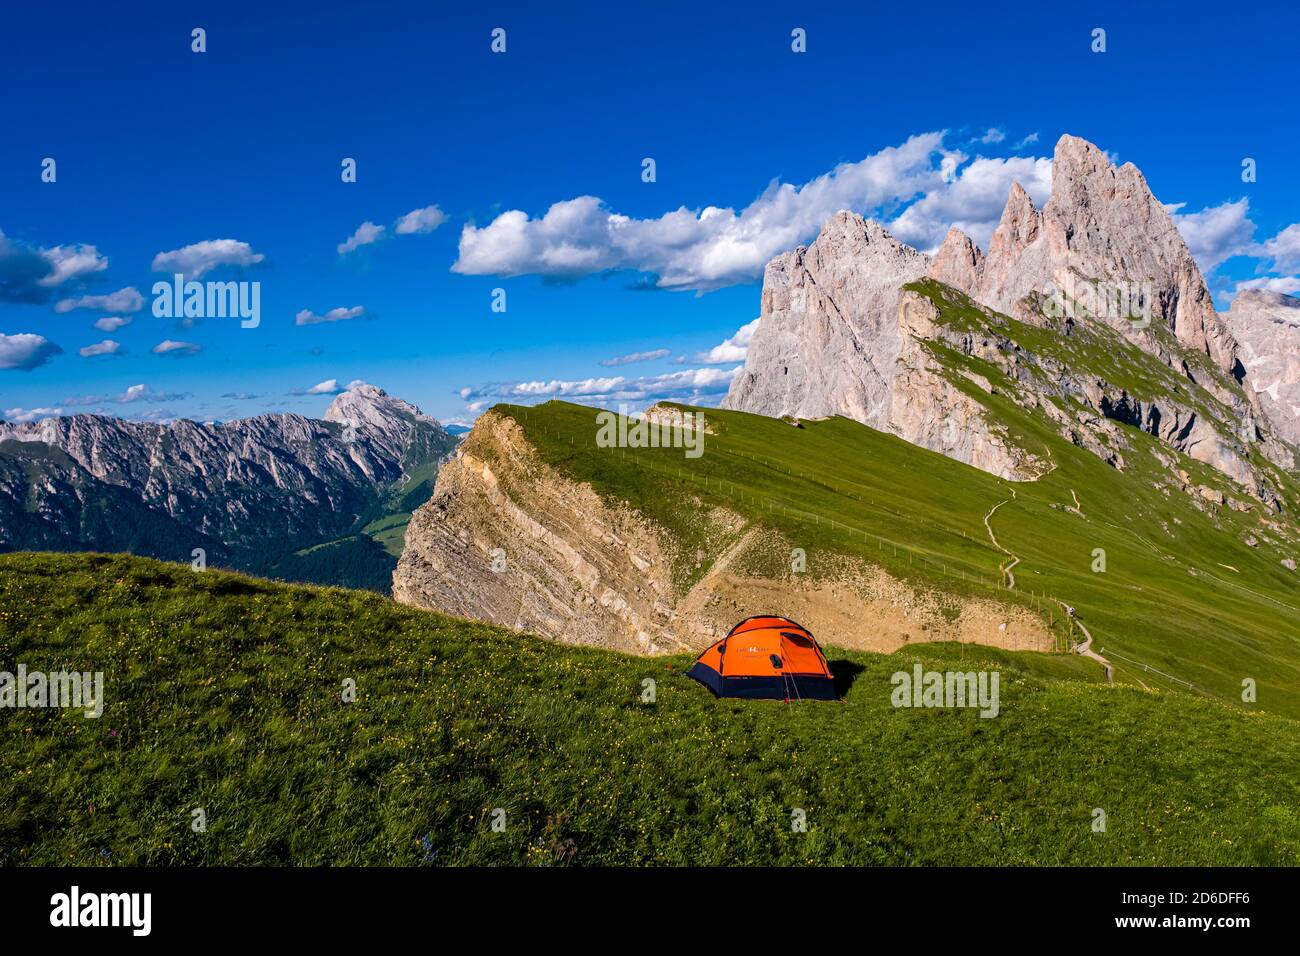 Ein orangefarbenes Zelt, das auf den Almen aufgestellt ist, die die steilen, rauen Klippen und Gipfel der Gebirgsformation Seceda umgeben, Secèda, Teil der Stockfoto